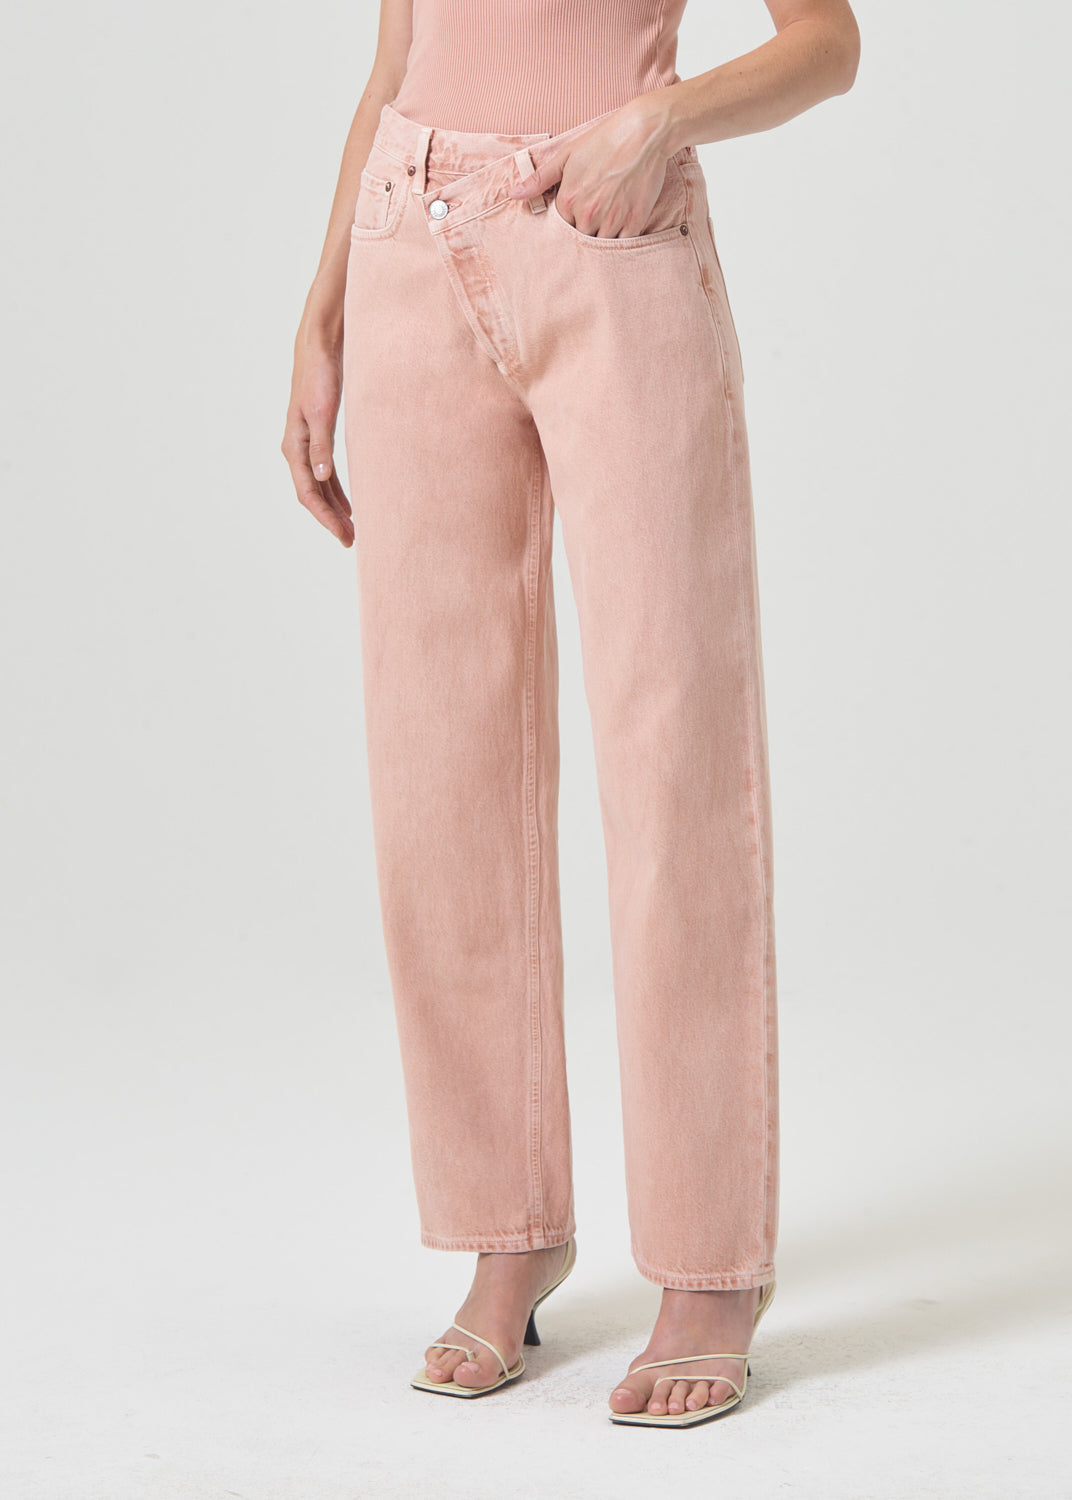 Criss Cross Upsized Jean in Pink Salt